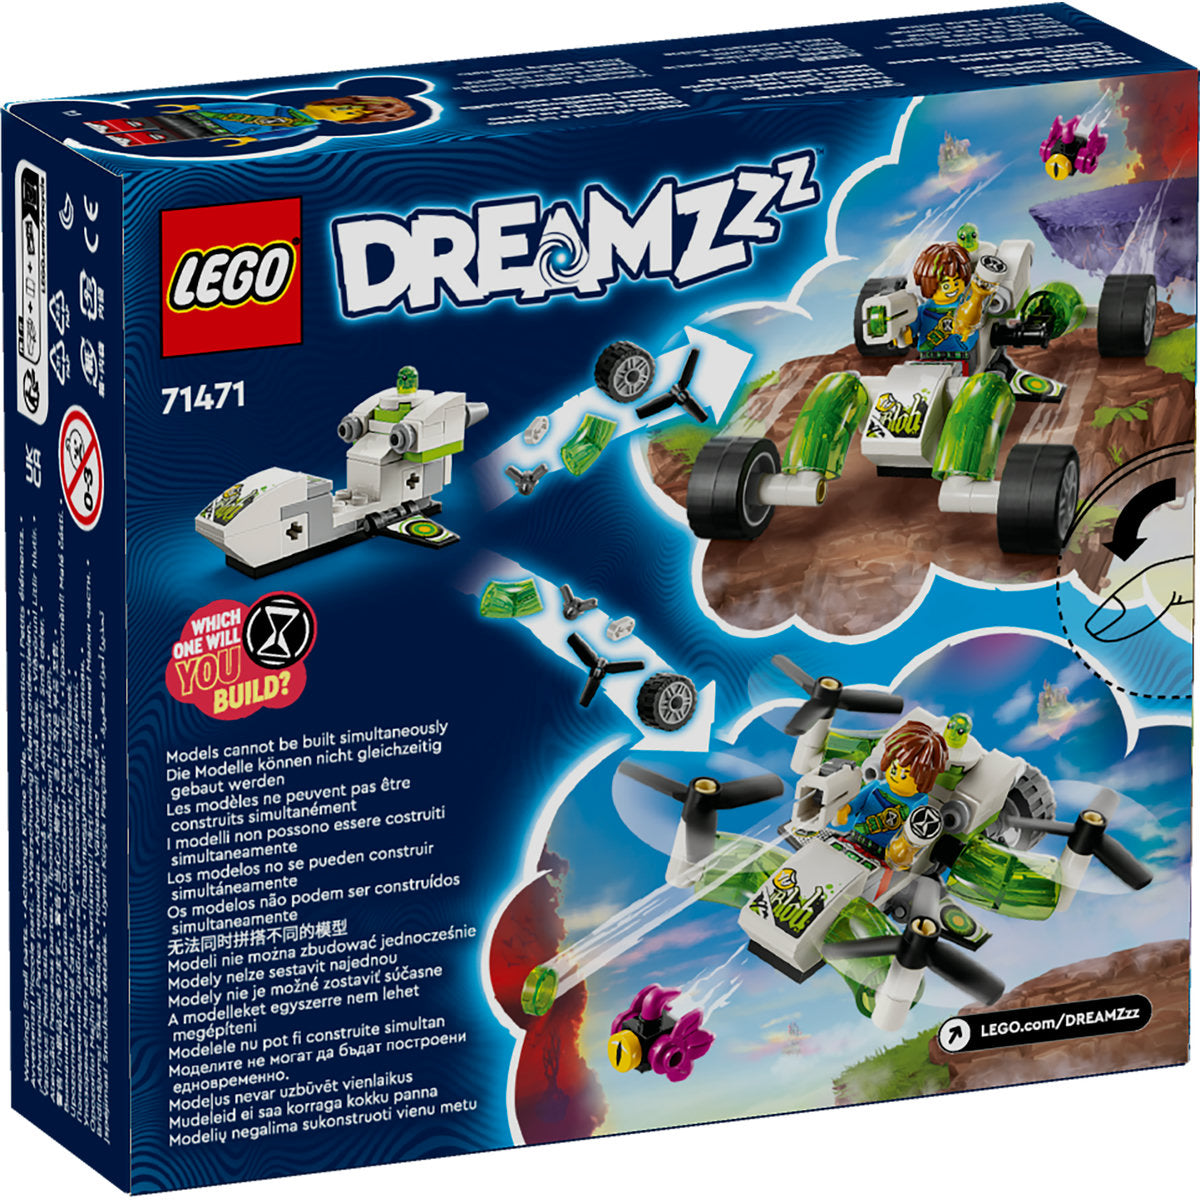 MASINA OFF-ROAD A LUI MATEO - LEGO DREAMZZZ - LEGO (71471) - Libelula Vesela - Jucarii